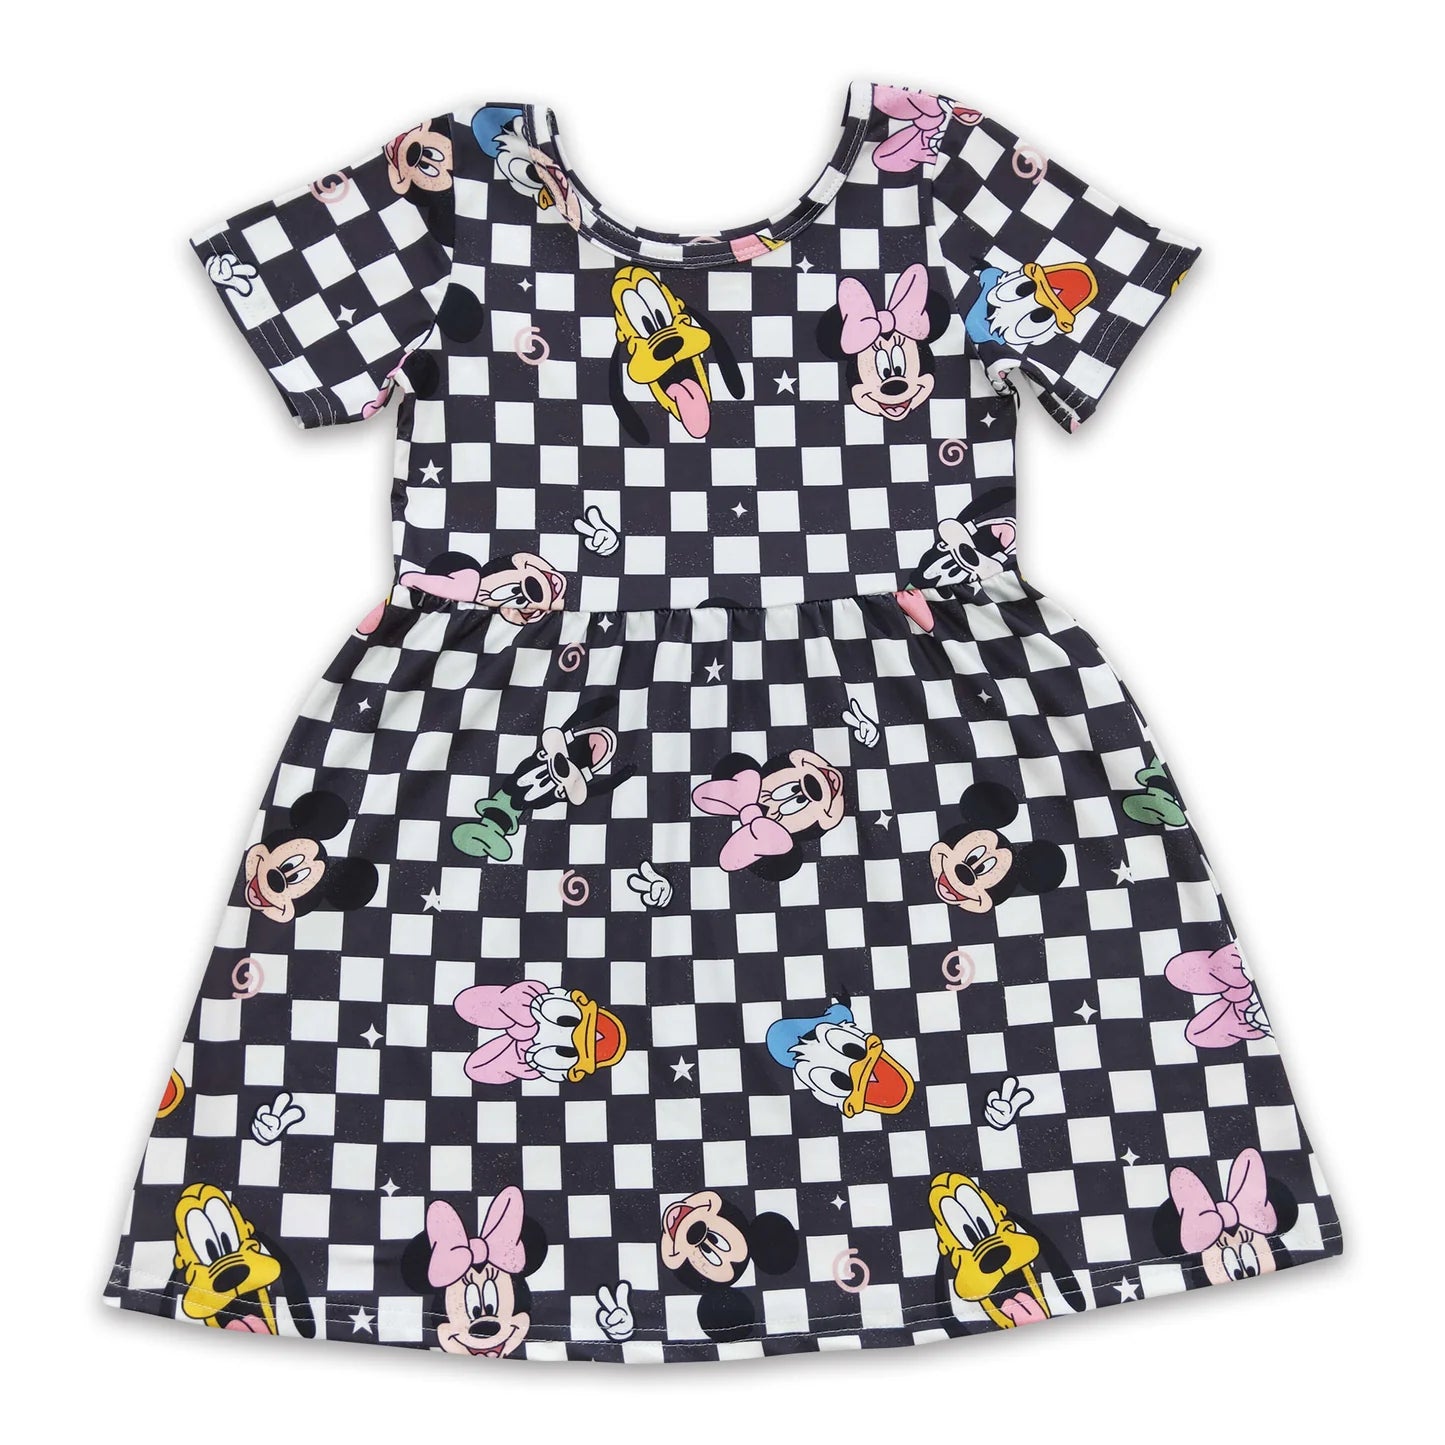 Magical Friends Checkered Dress - Pre Order Q 4.22